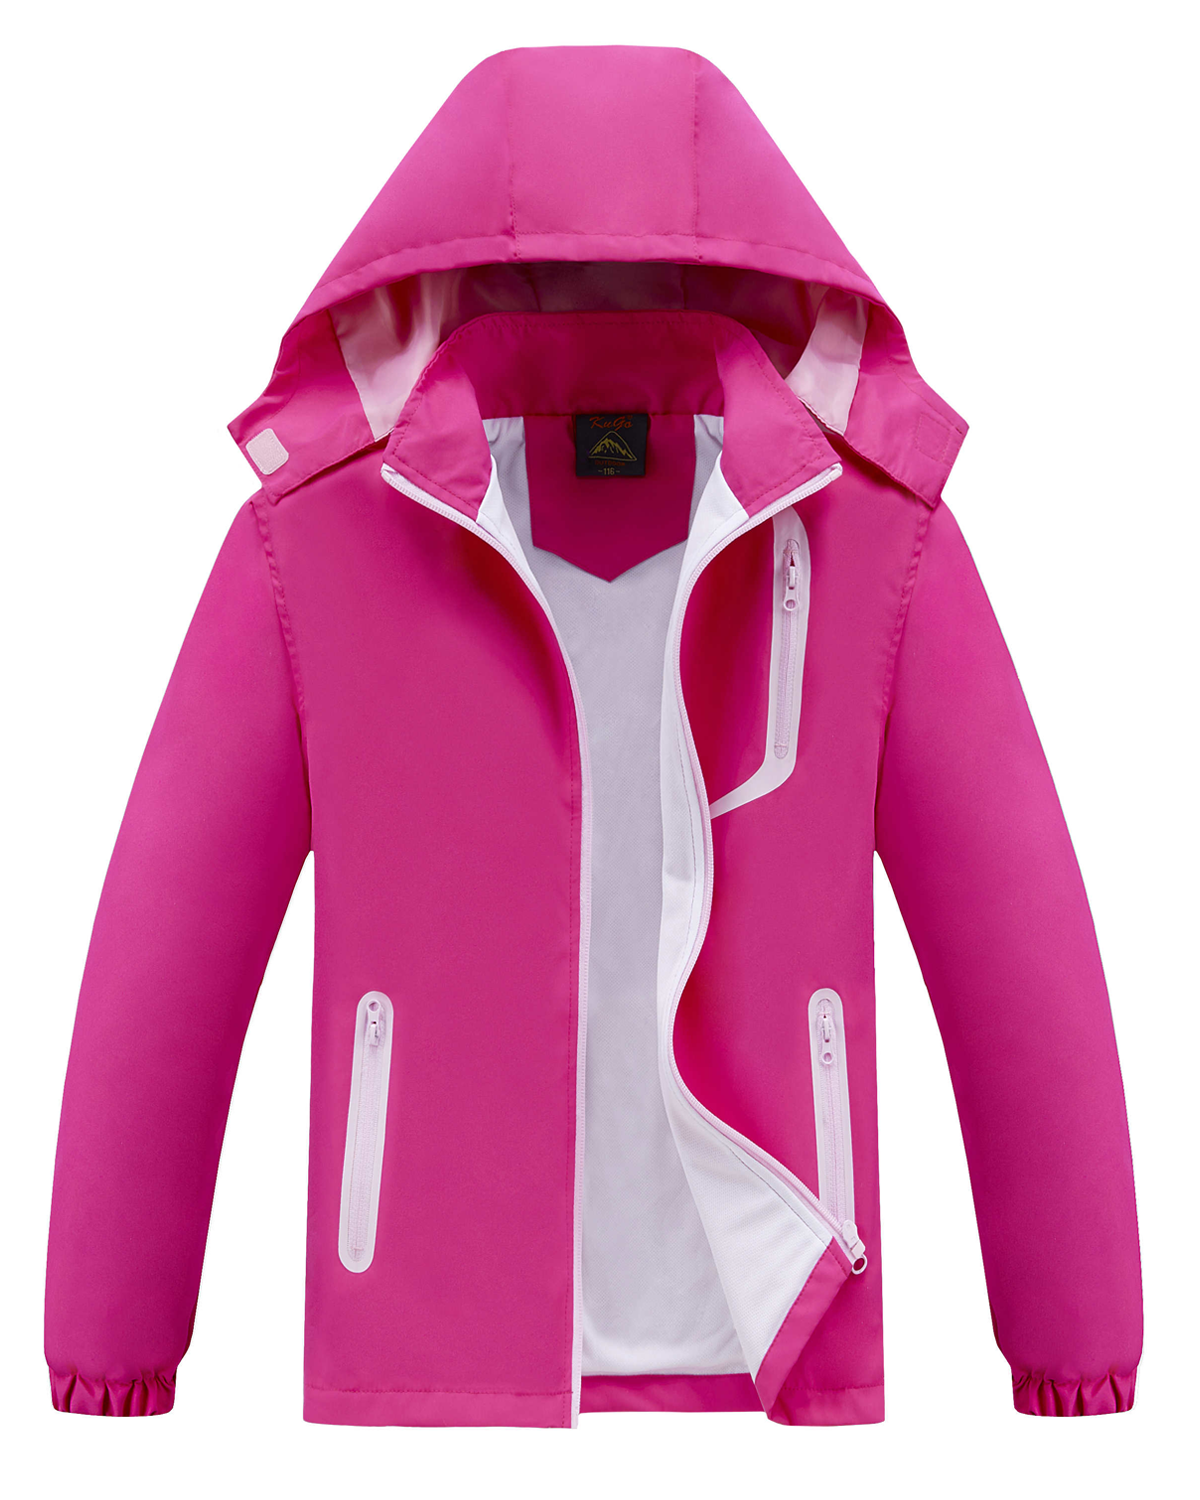 Dívčí jarní, podzimní bunda - KUGO B2868, růžová Barva: Růžová, Velikost: 110